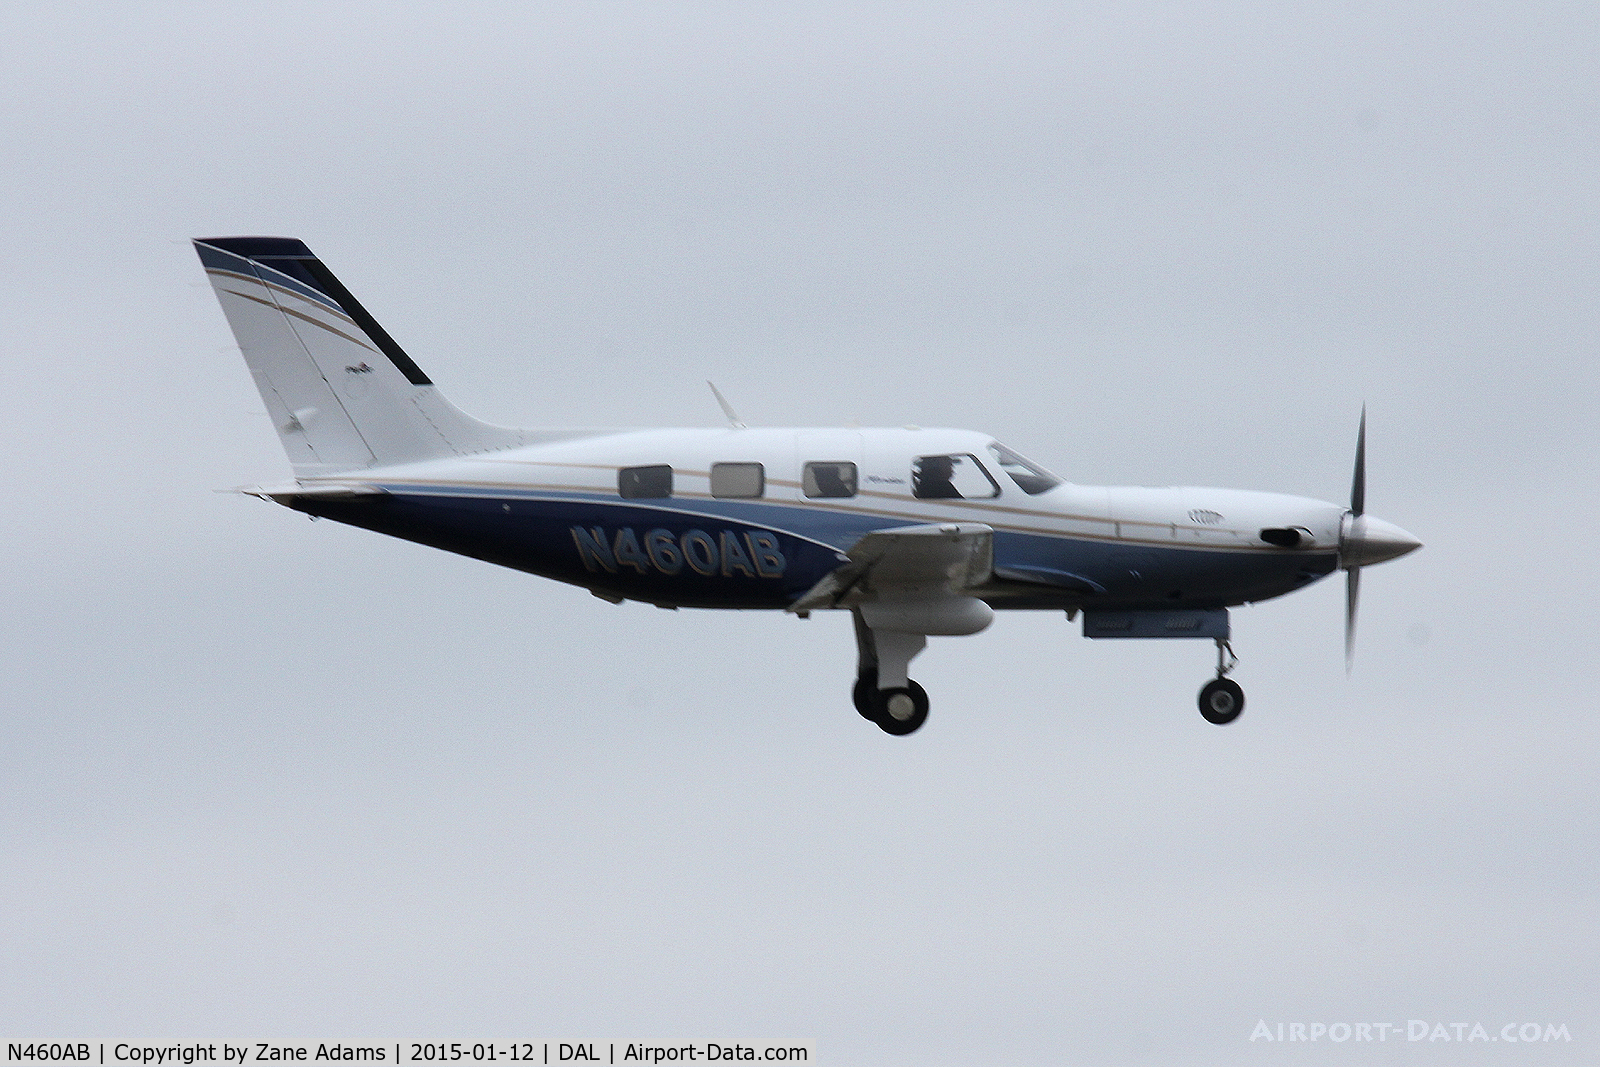 N460AB, 2010 Piper PA-46-500TP Meridian C/N 4697431, Landing at Dallas Love Field